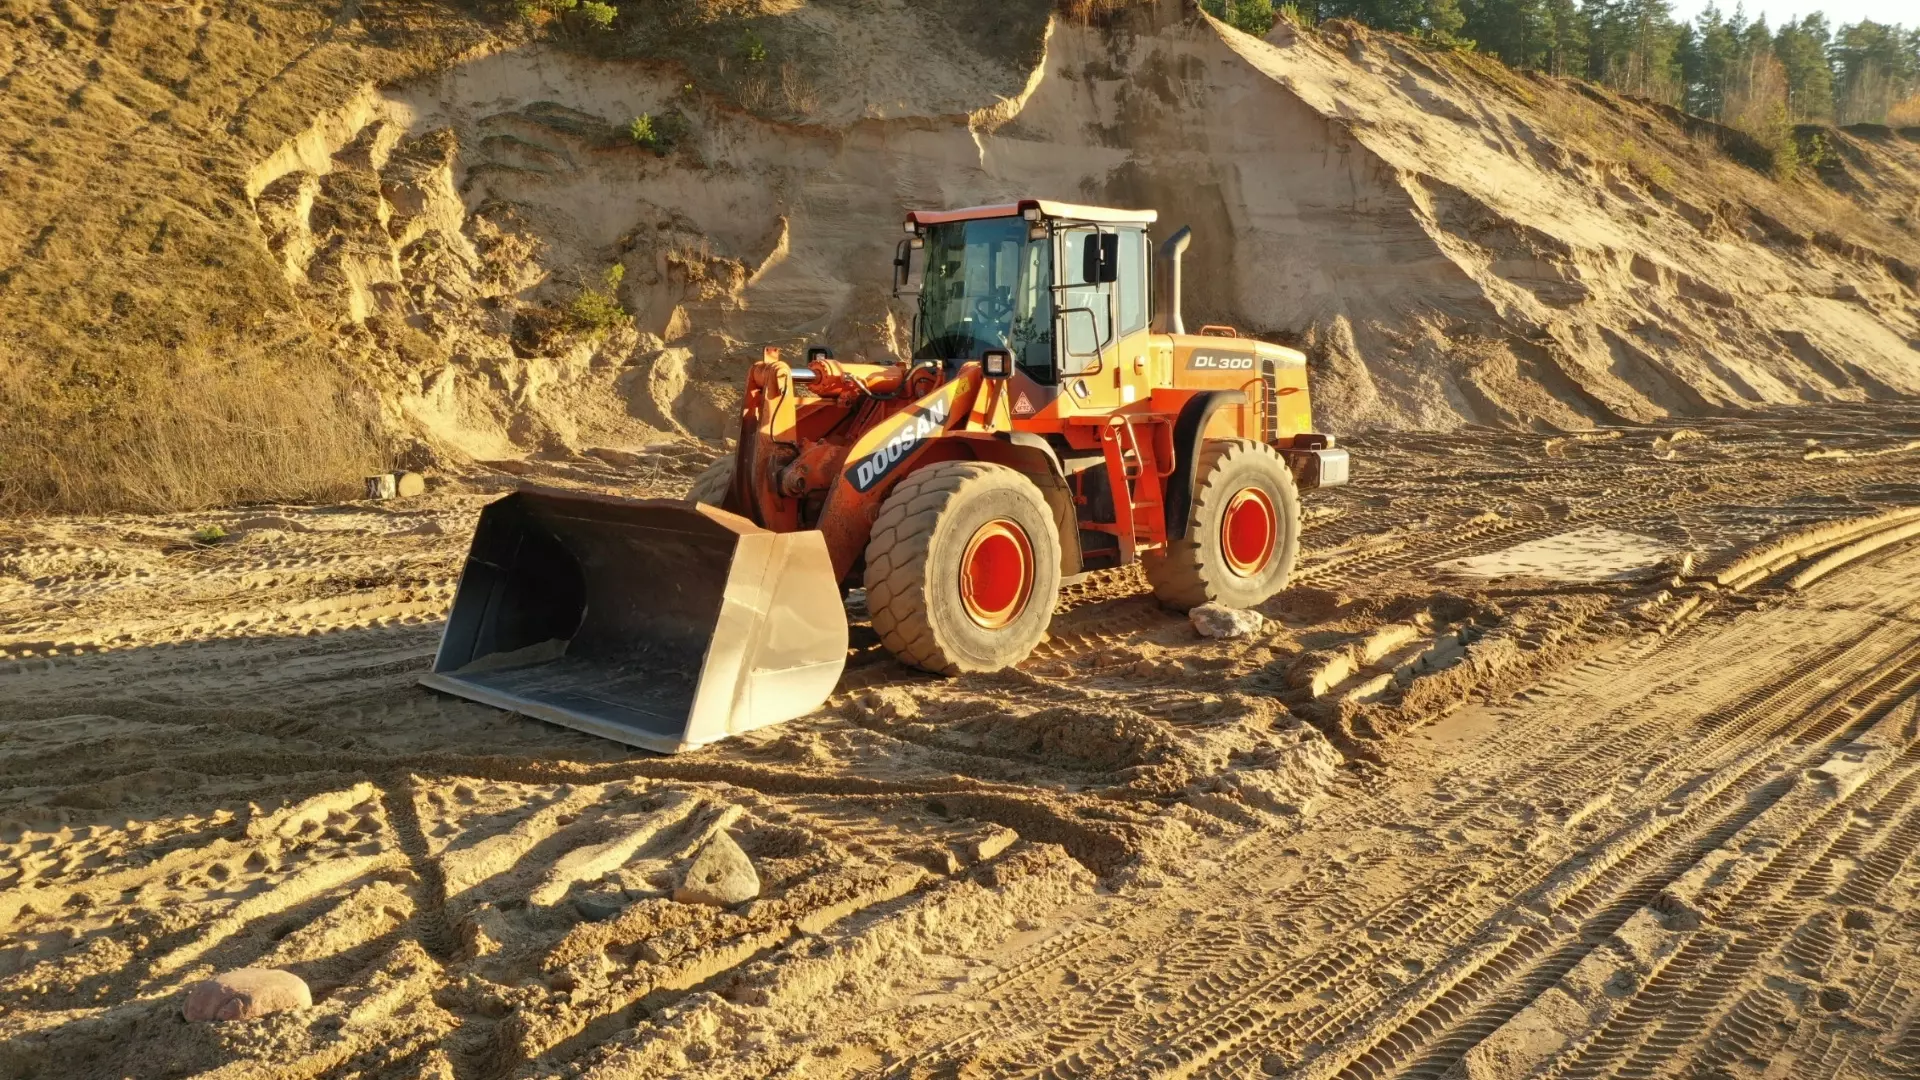 Бизнесмен незаконно разработал целый карьер песка в Ростовской области